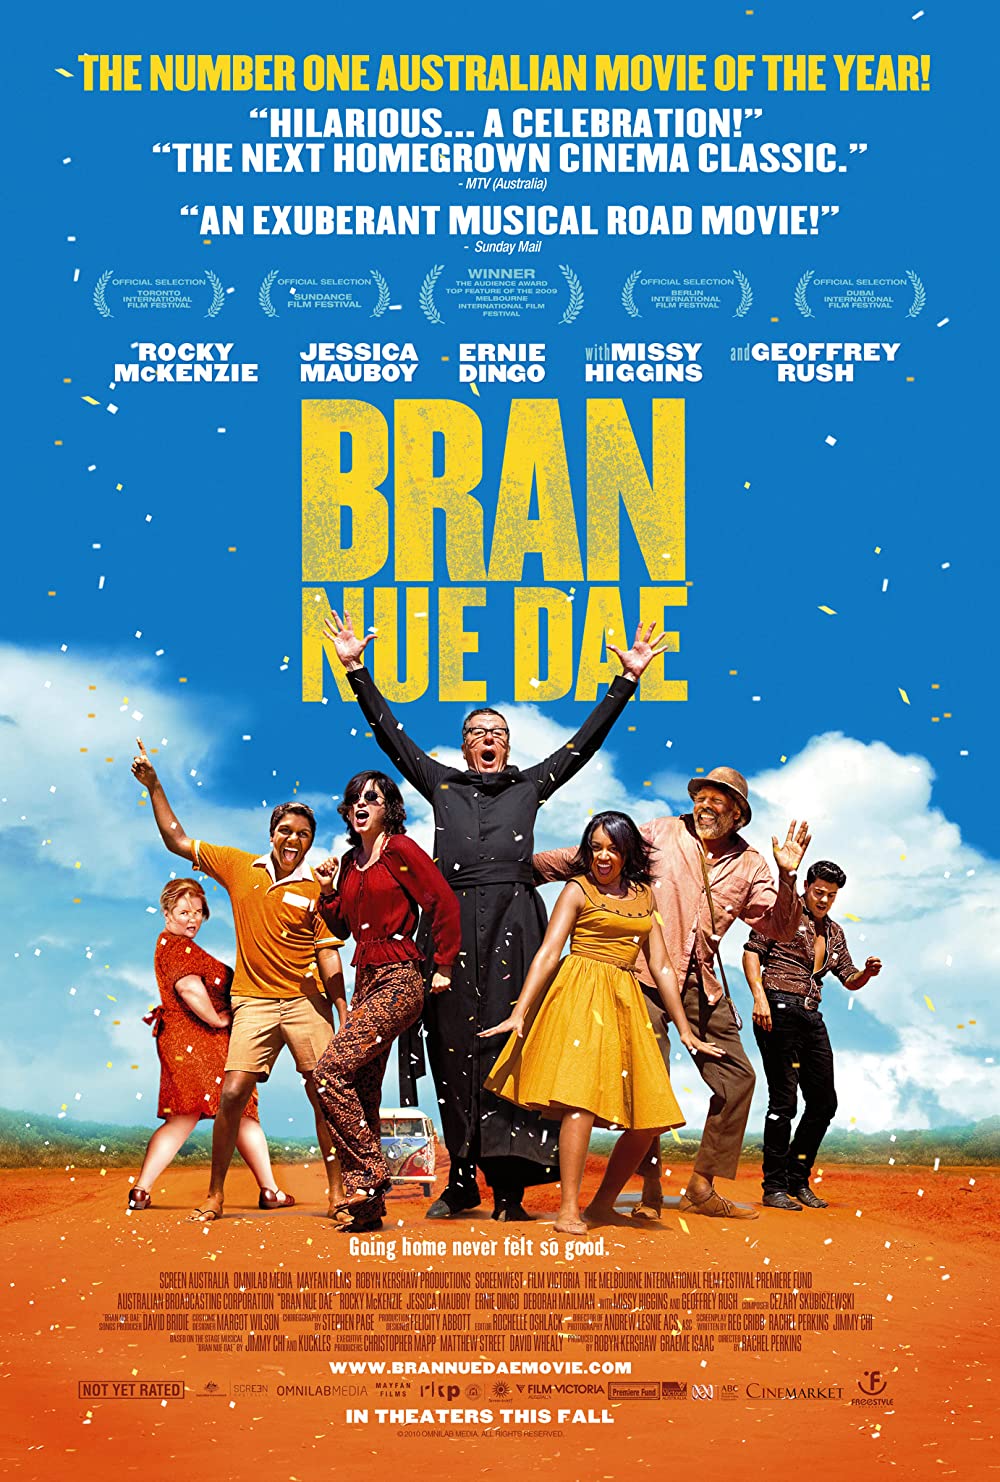 Filmbeschreibung zu Bran Nue Dae